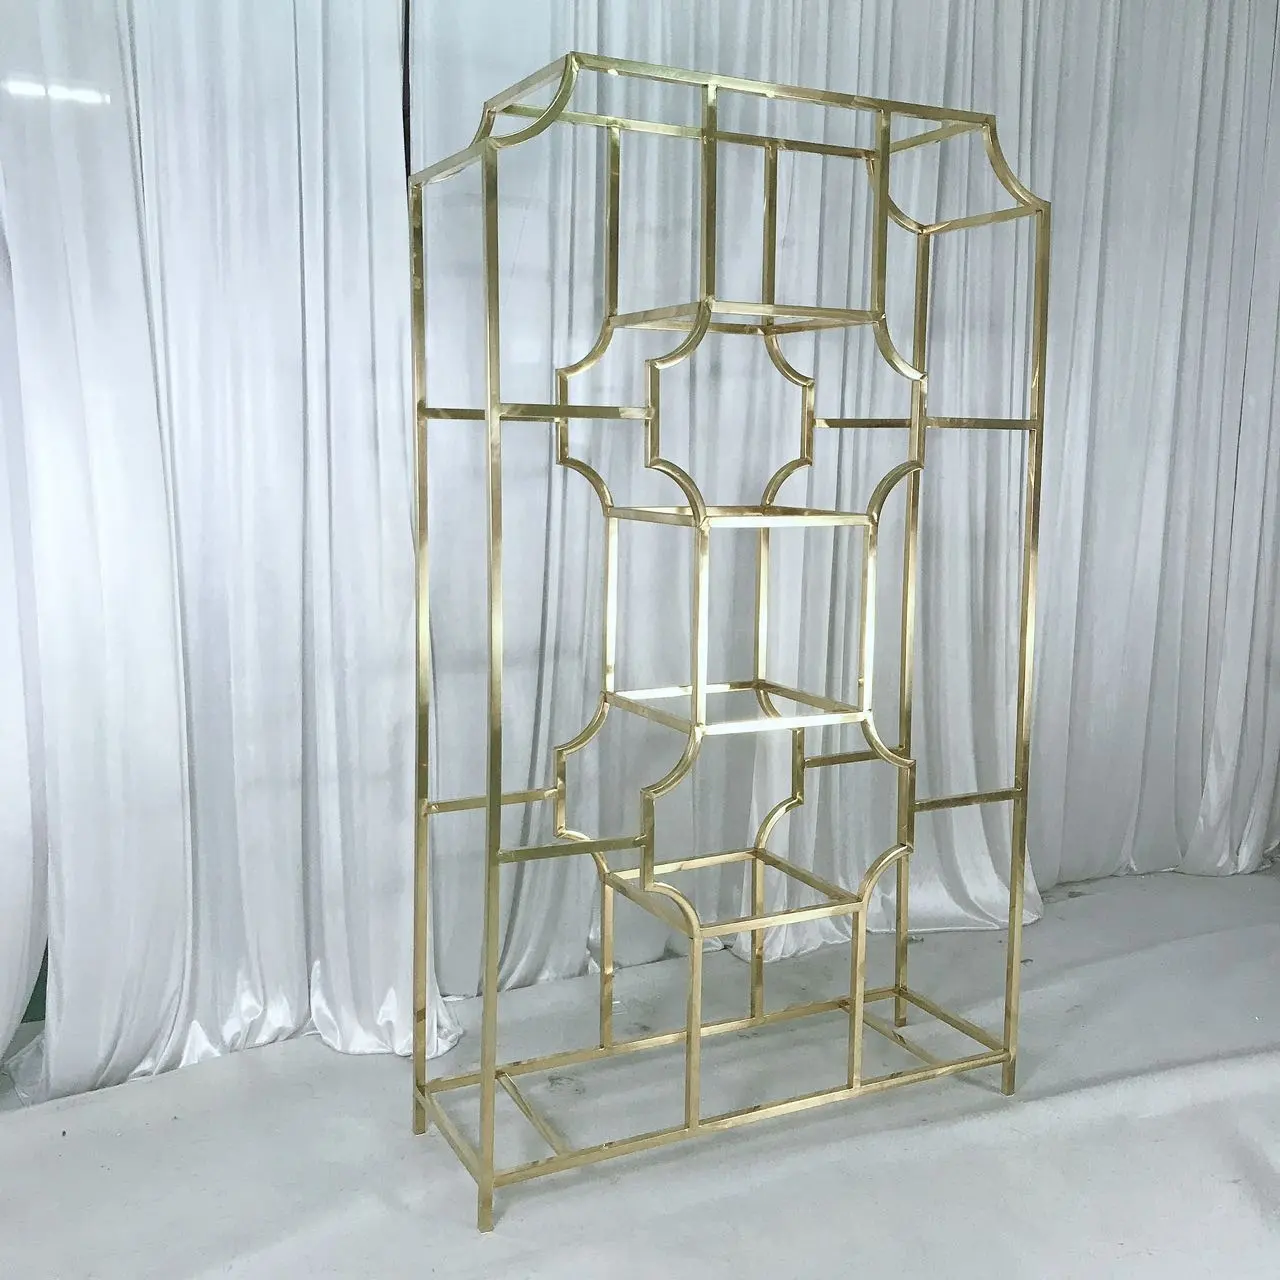 Elegant Wine Shelf Bar Rack Golden Stainless Steel shower shelf wedding decorative shelves